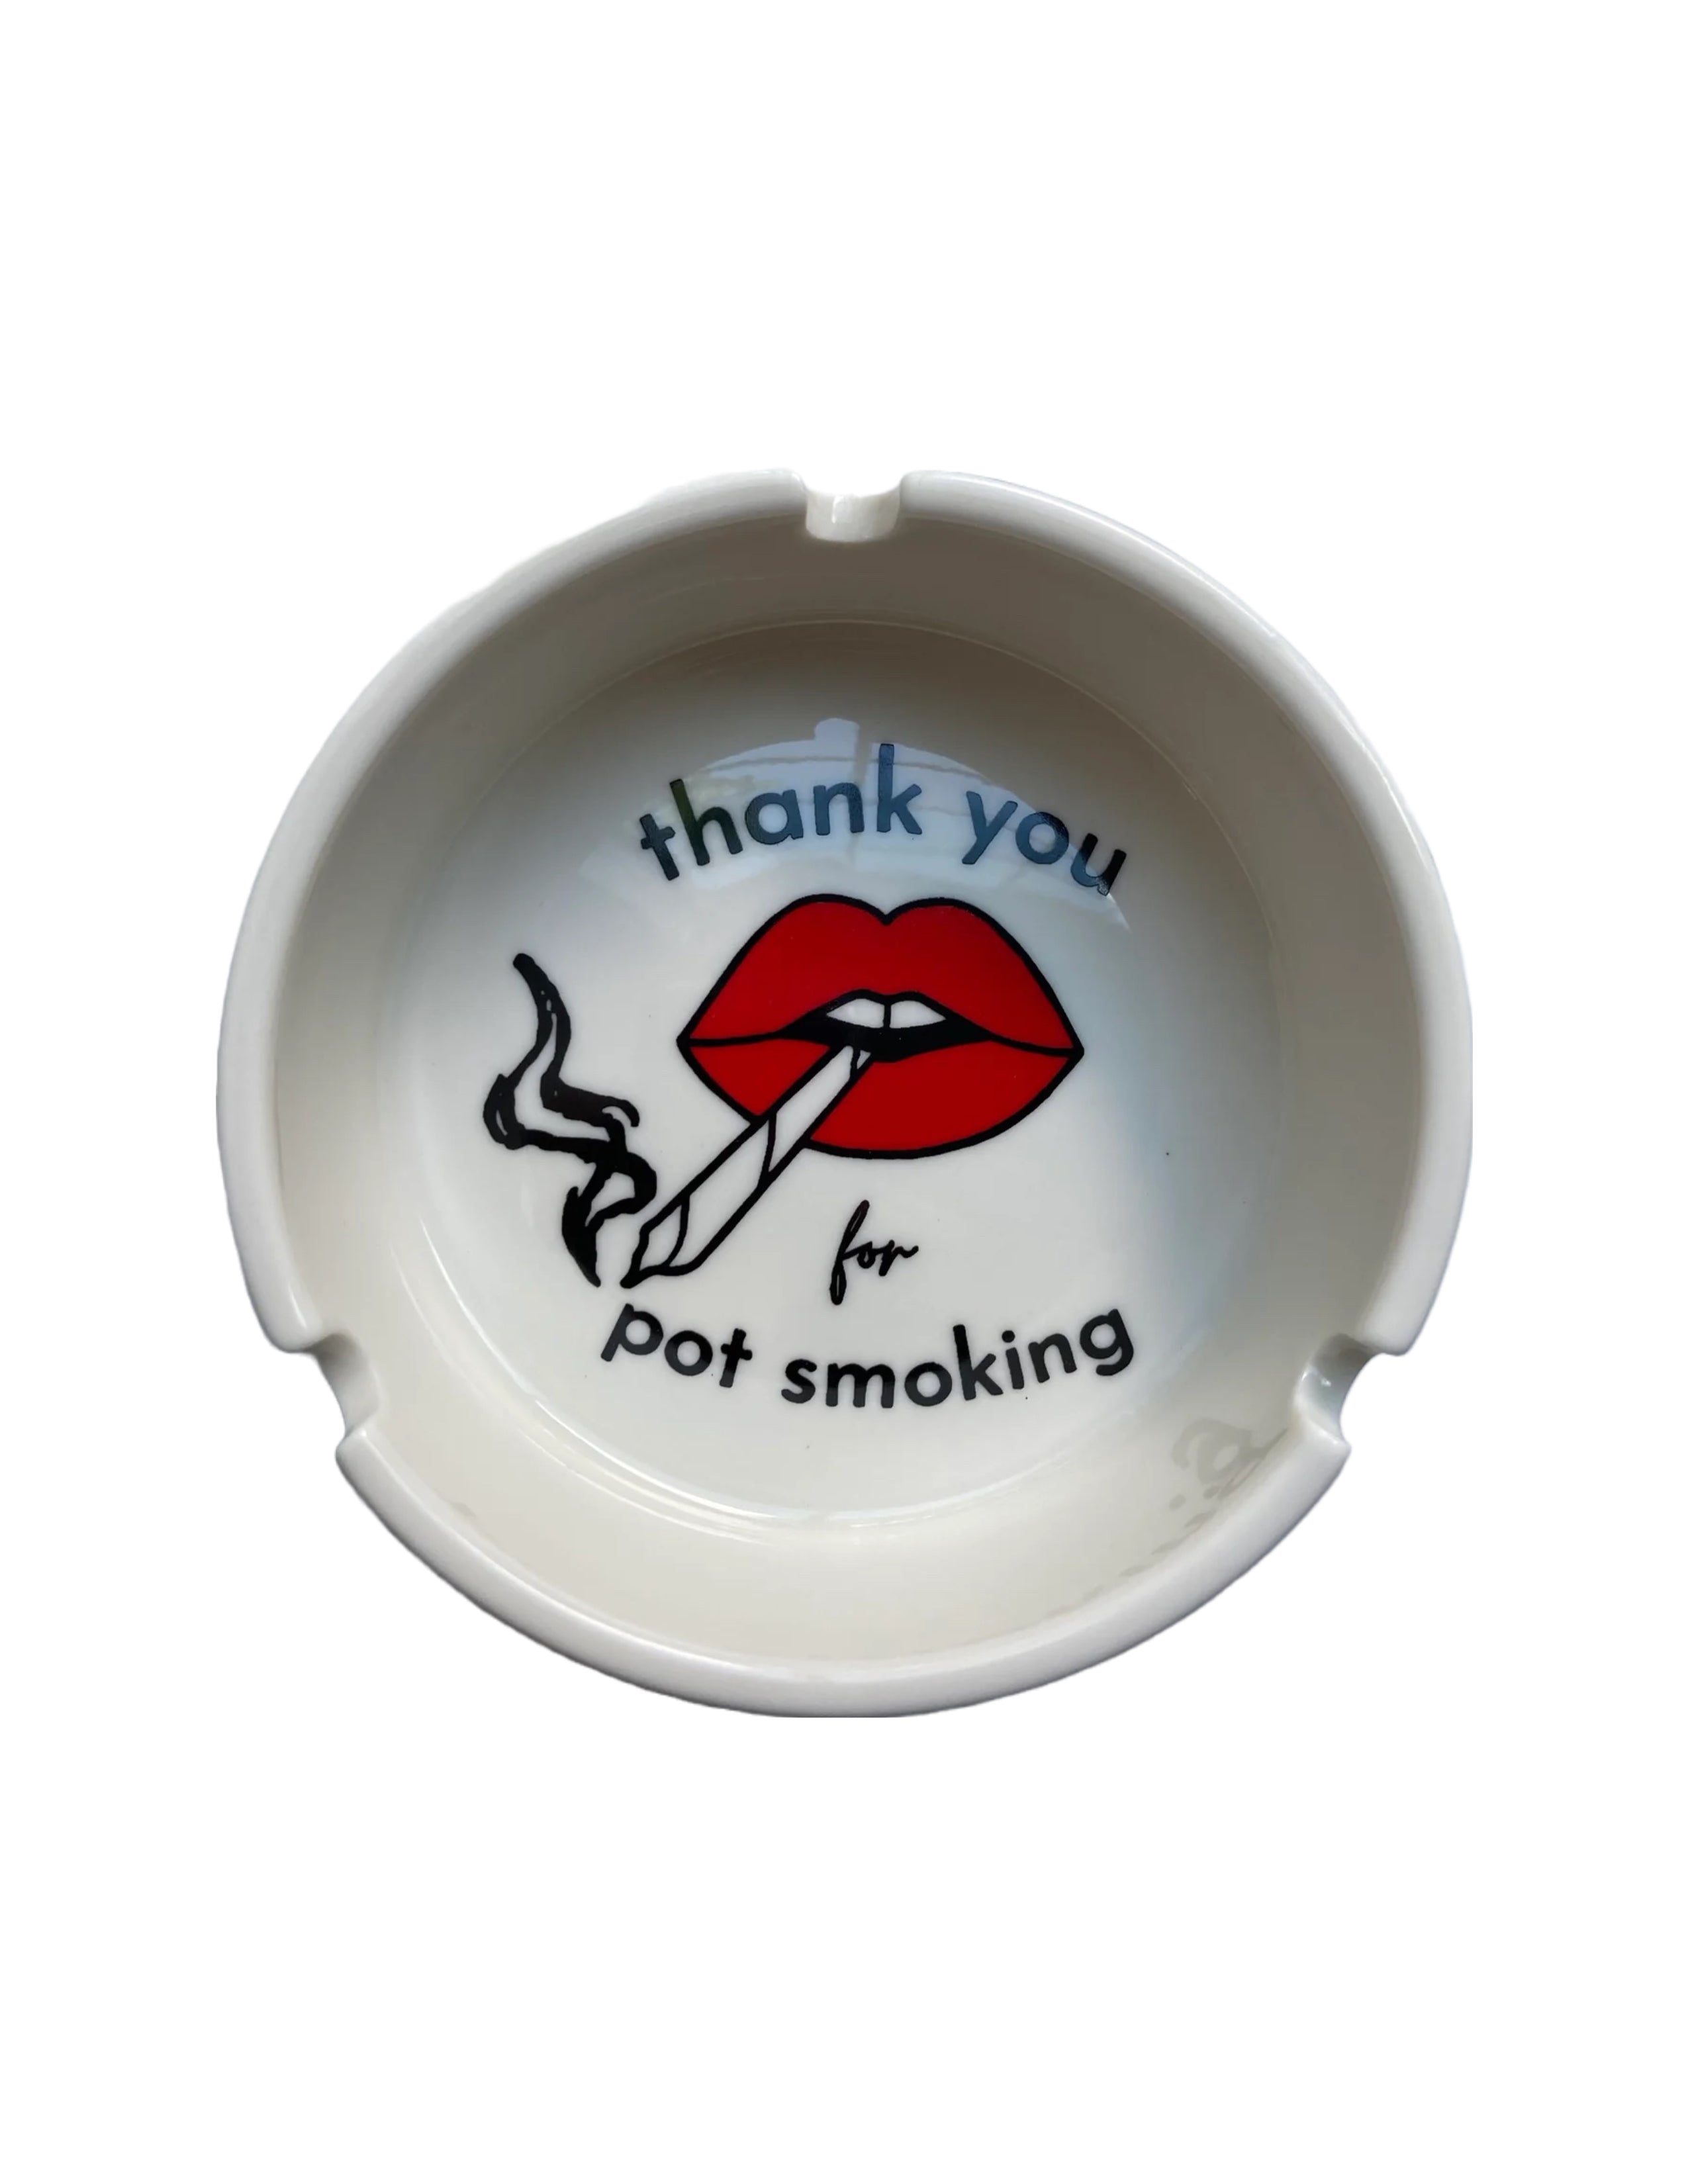 Thank you for Pot Smoking Ashtray